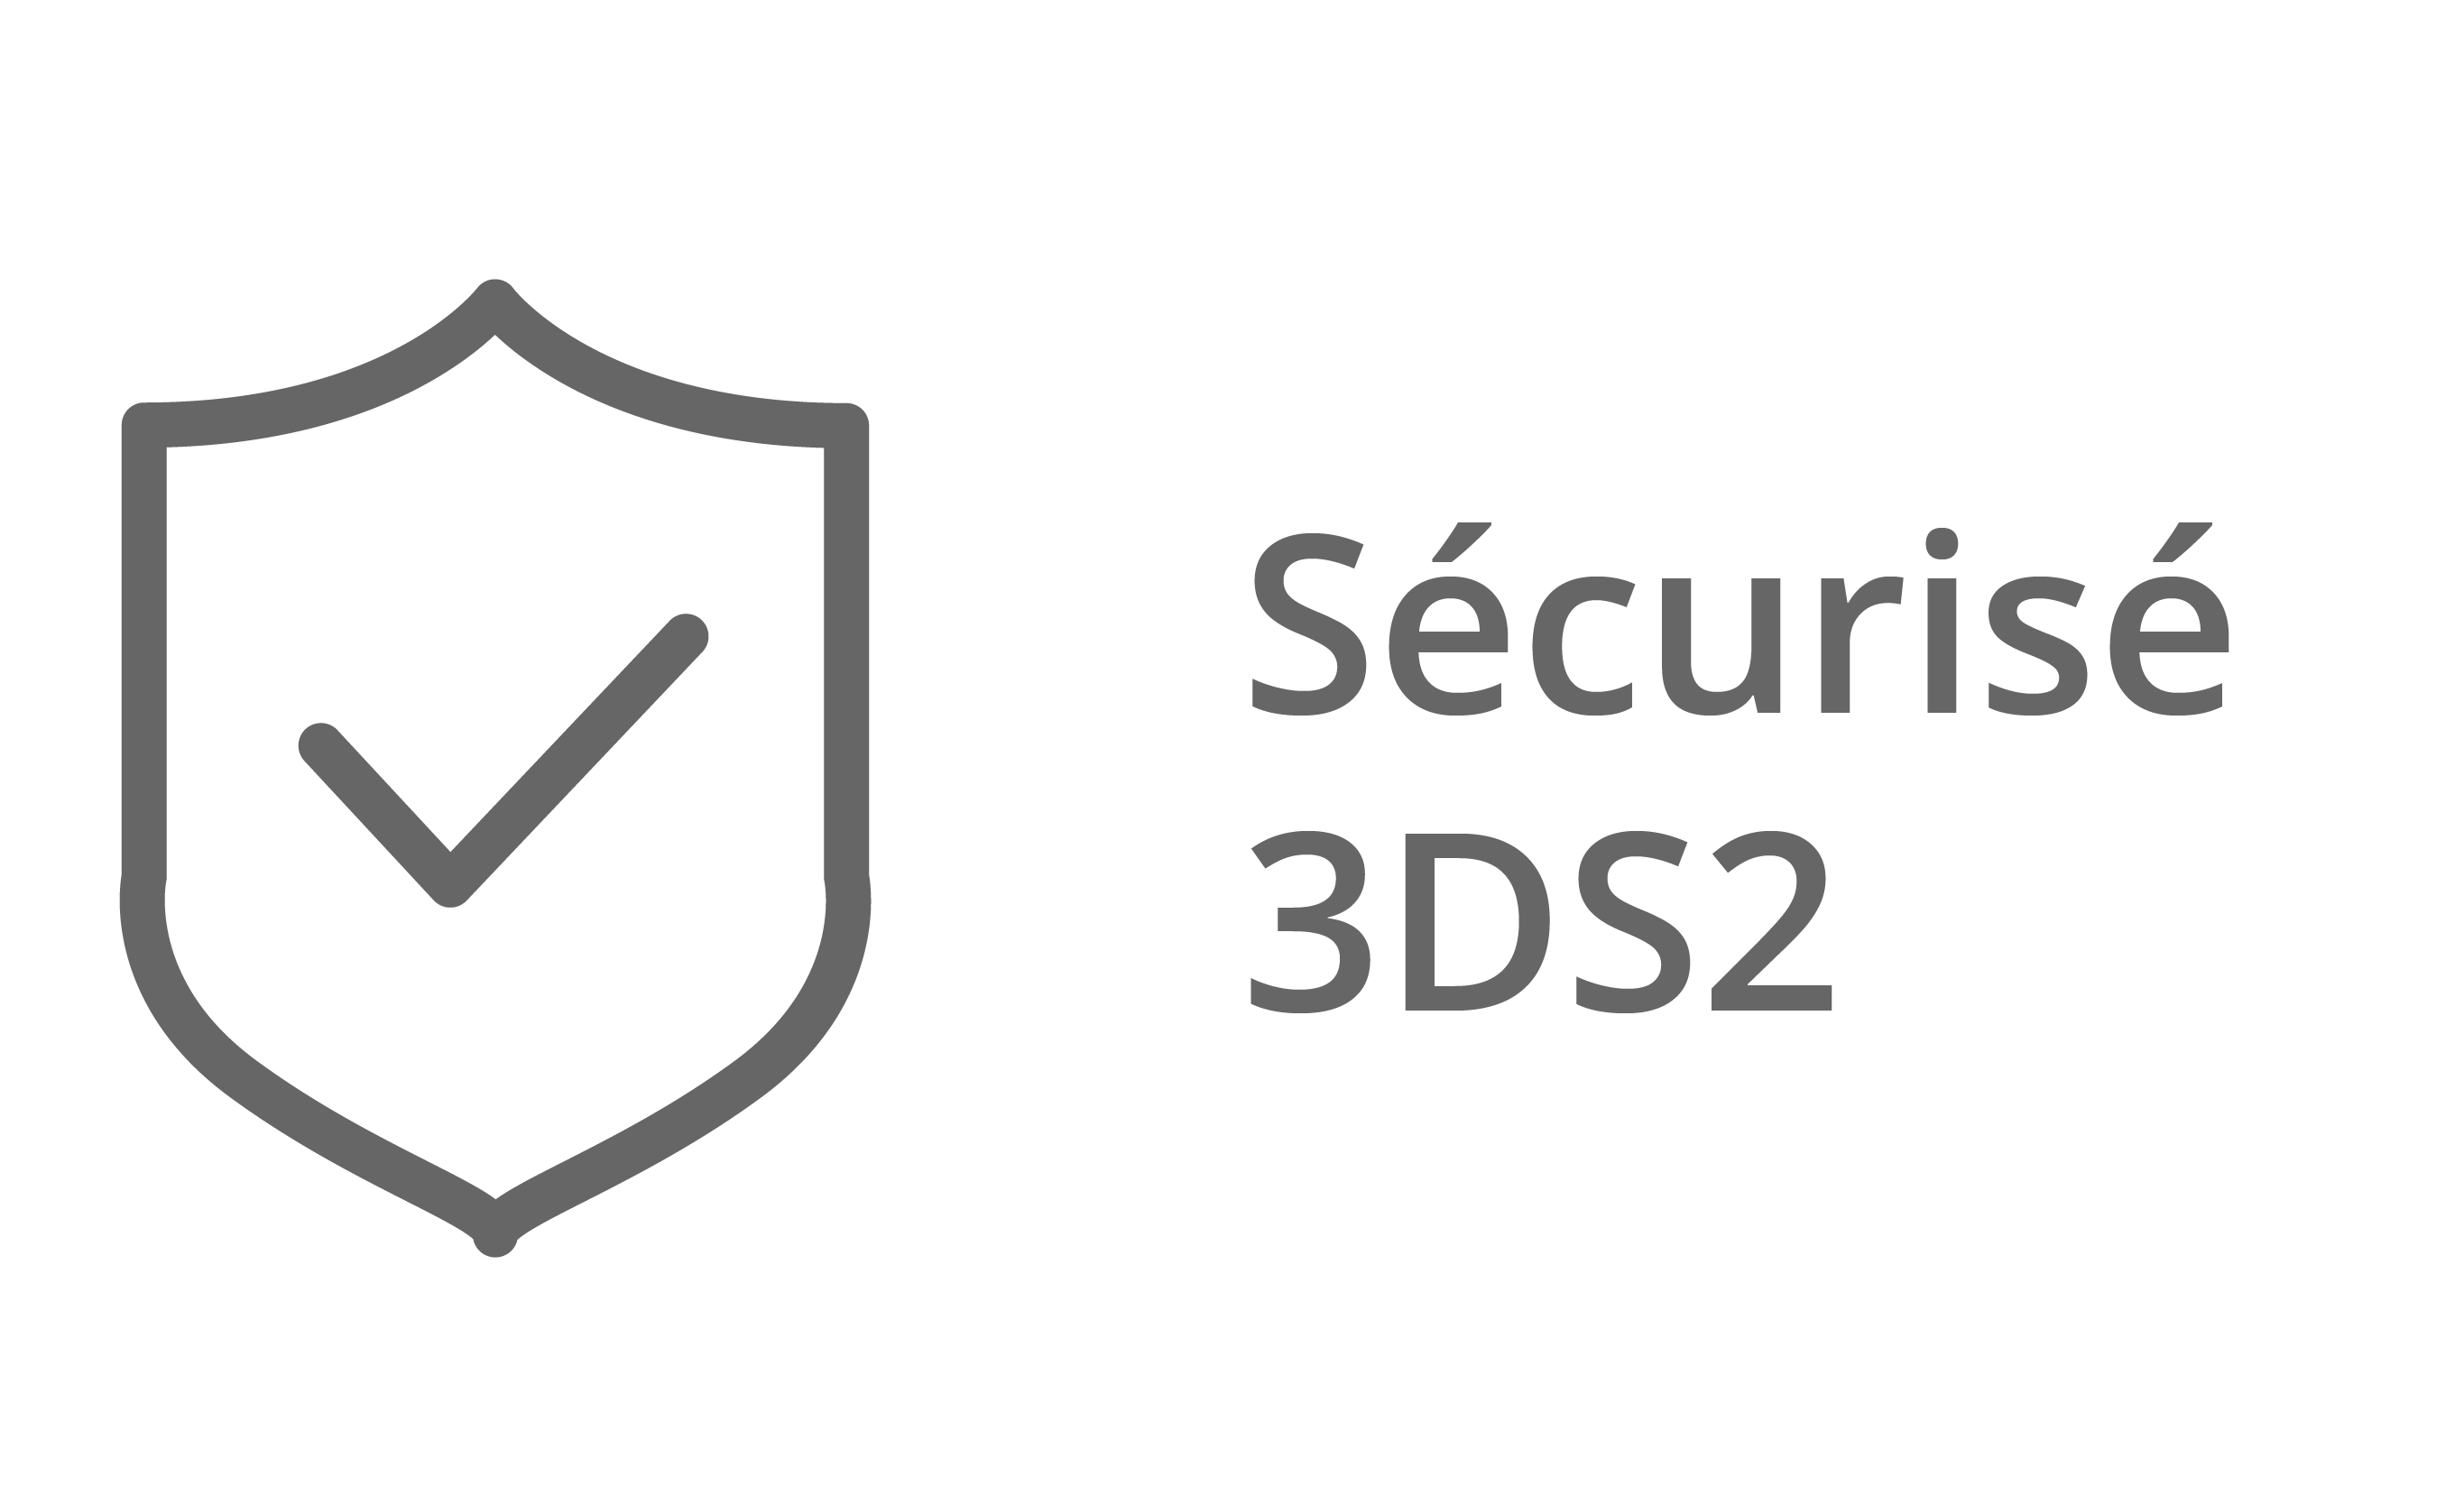 Paiement sécurisé 3DS2 proposé par Payzen